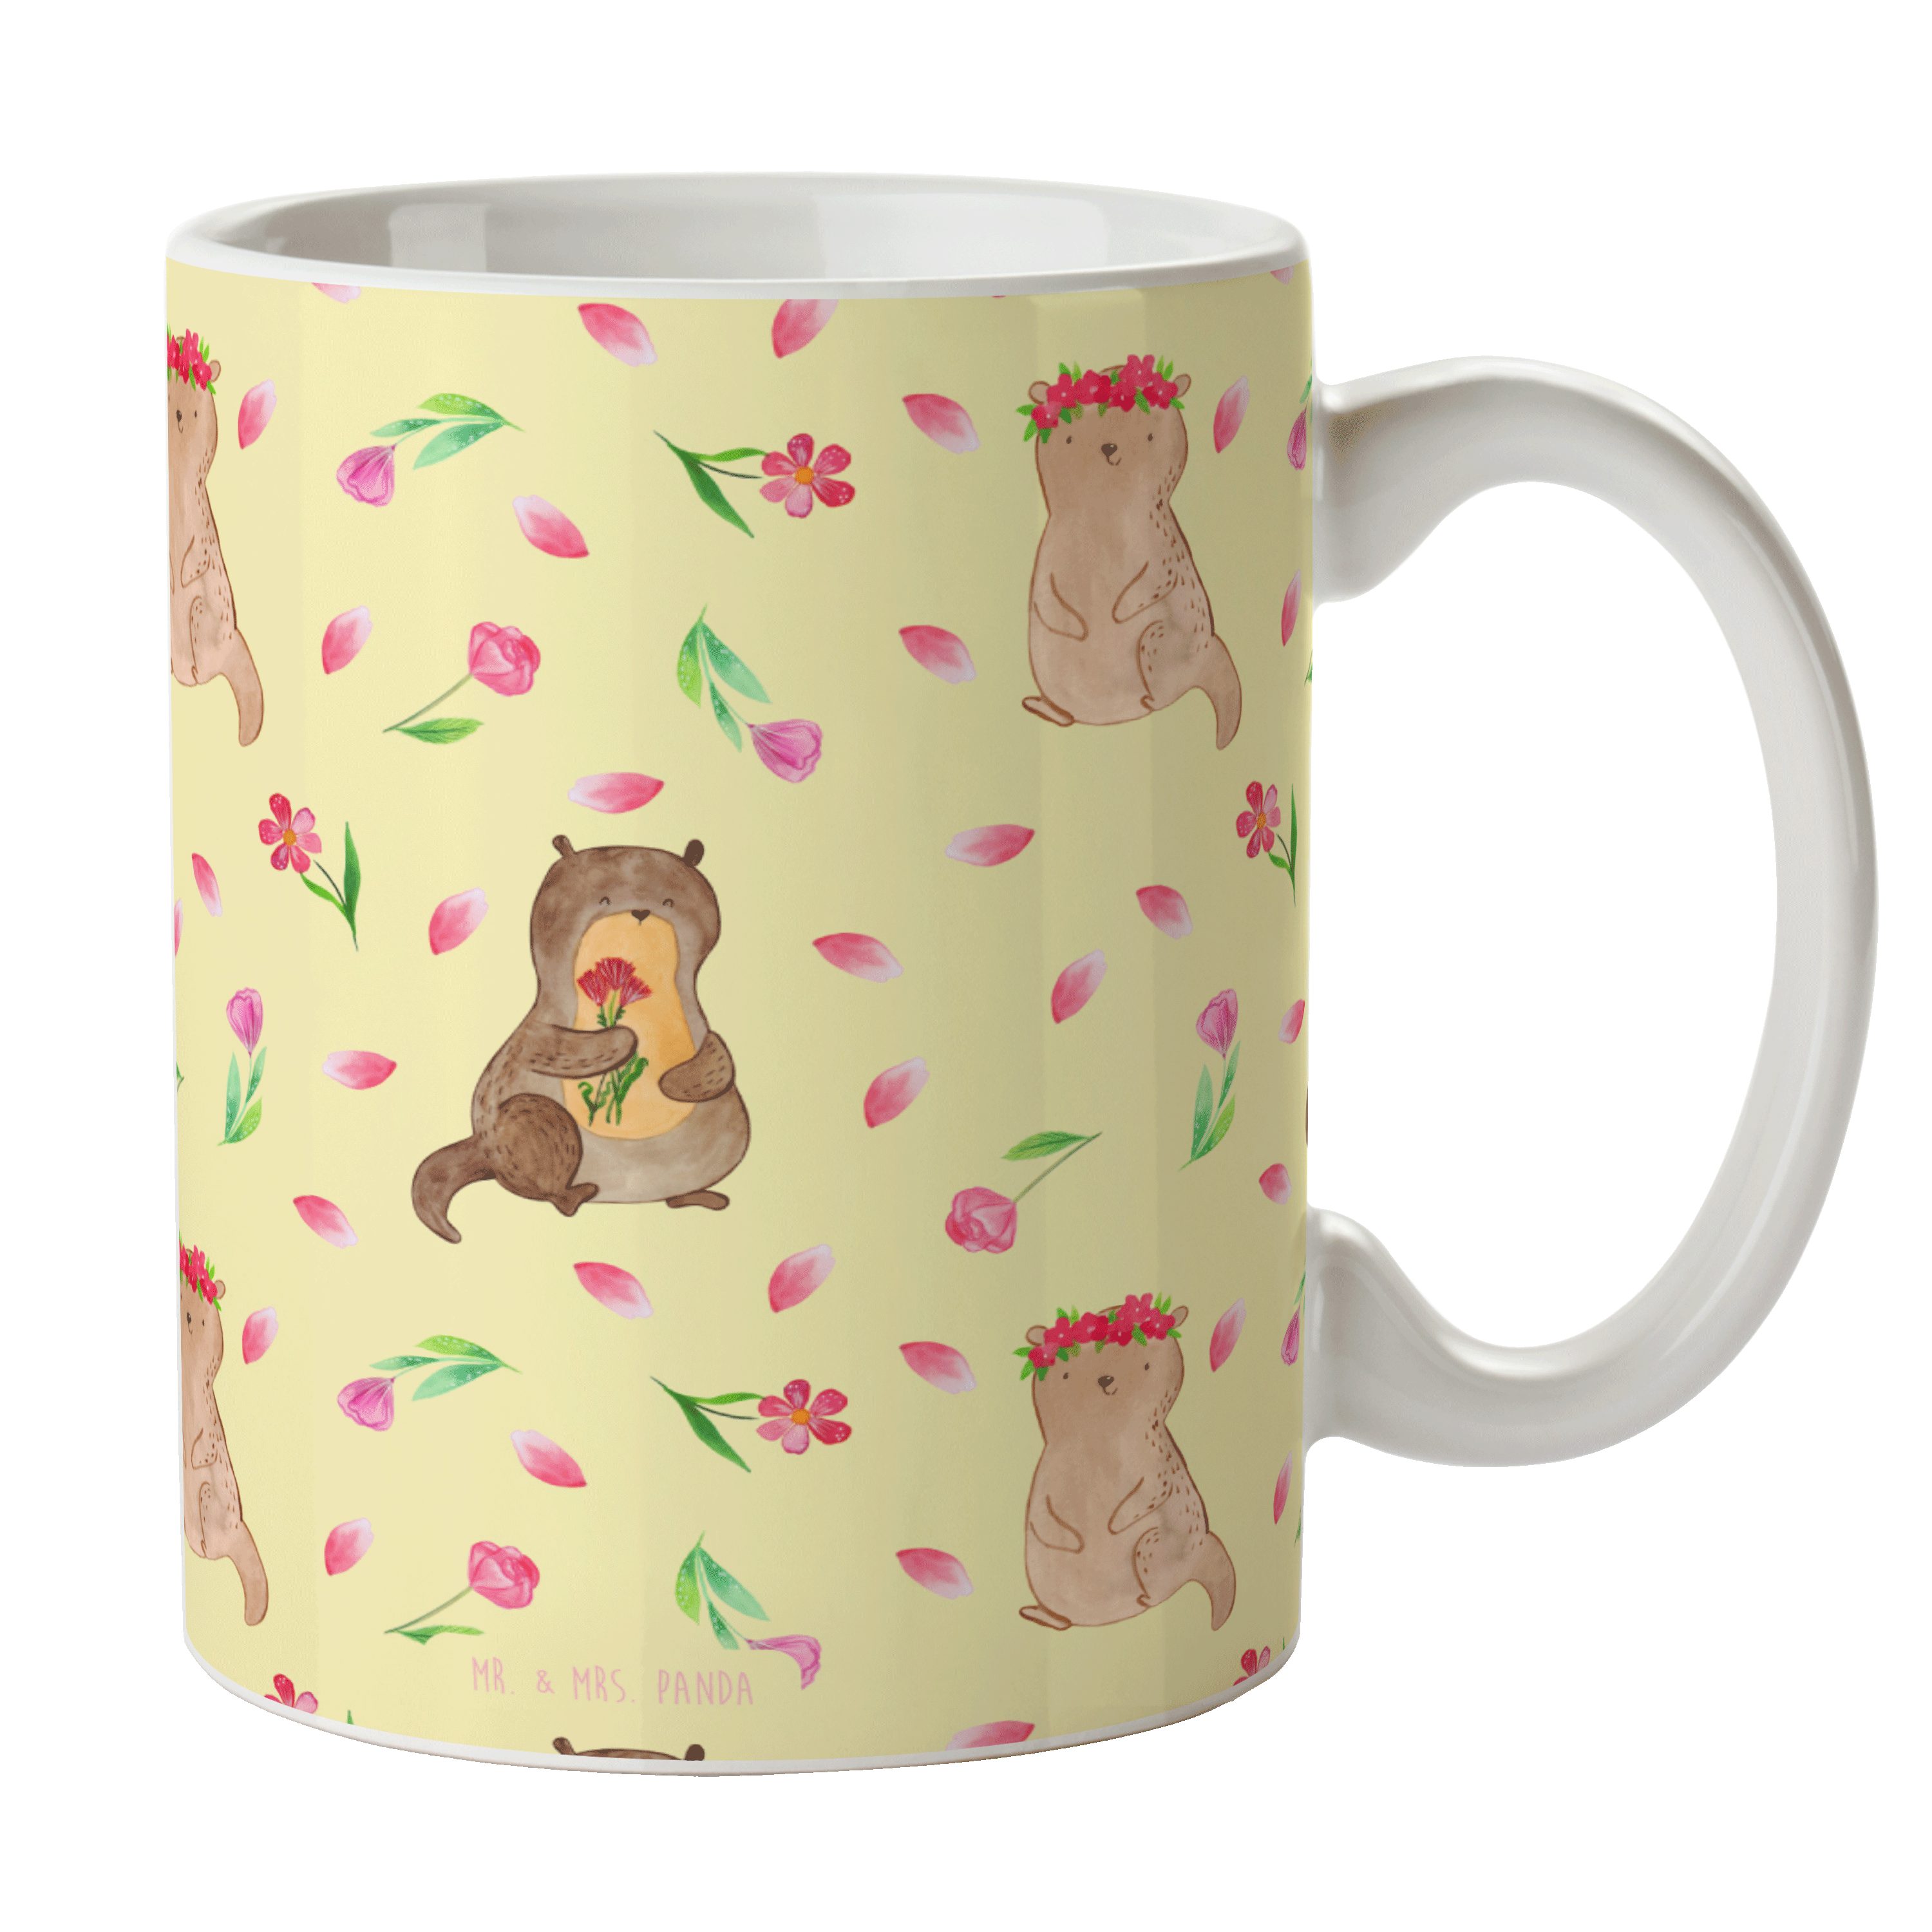 Mr. & Mrs. Panda Tasse Otter Blumenstrauß - Gelb - Geschenk, Geschenk Tasse, Seeotter, süß, Keramik